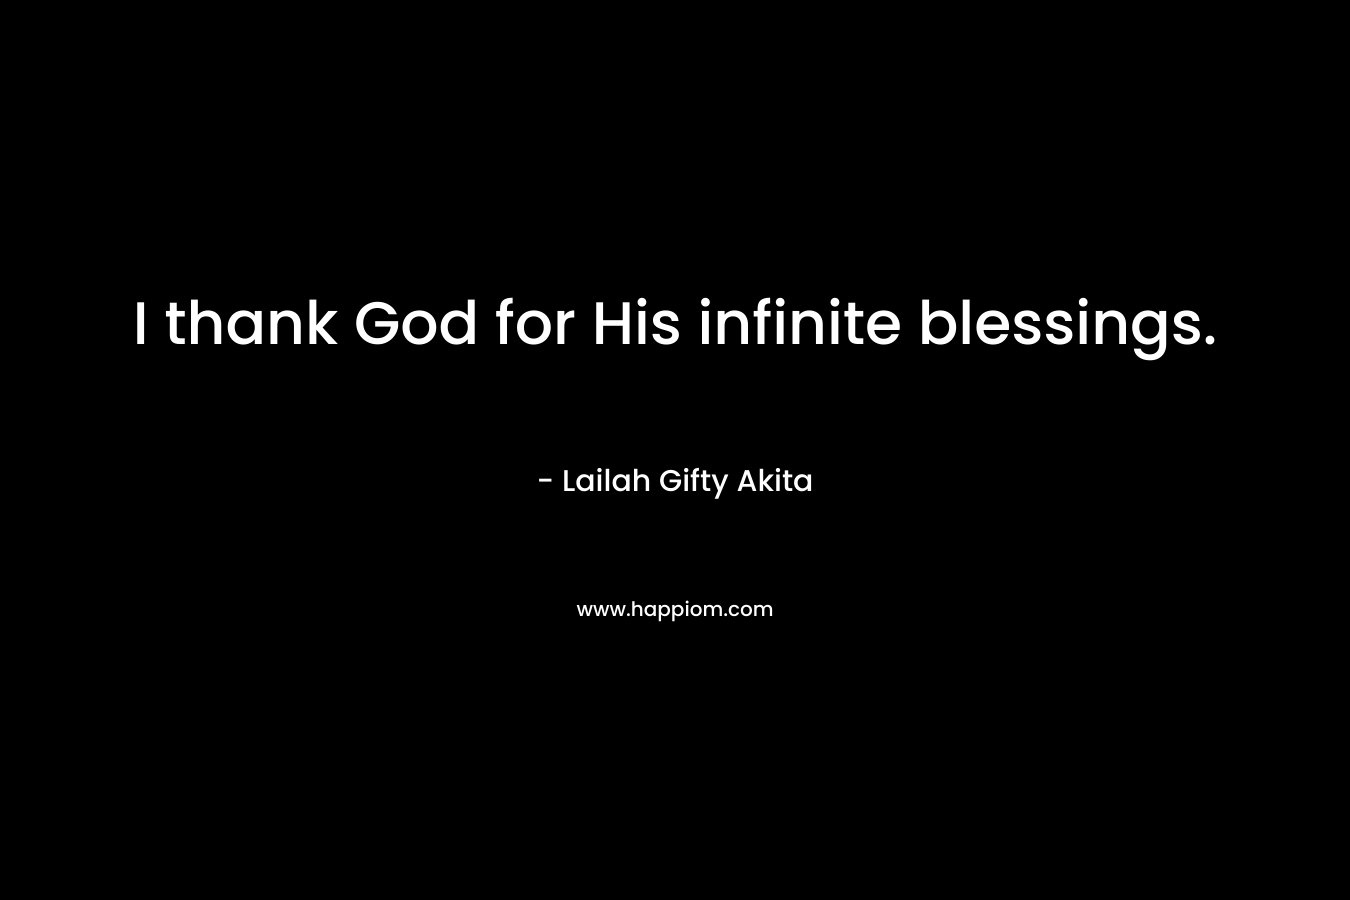 I thank God for His infinite blessings.